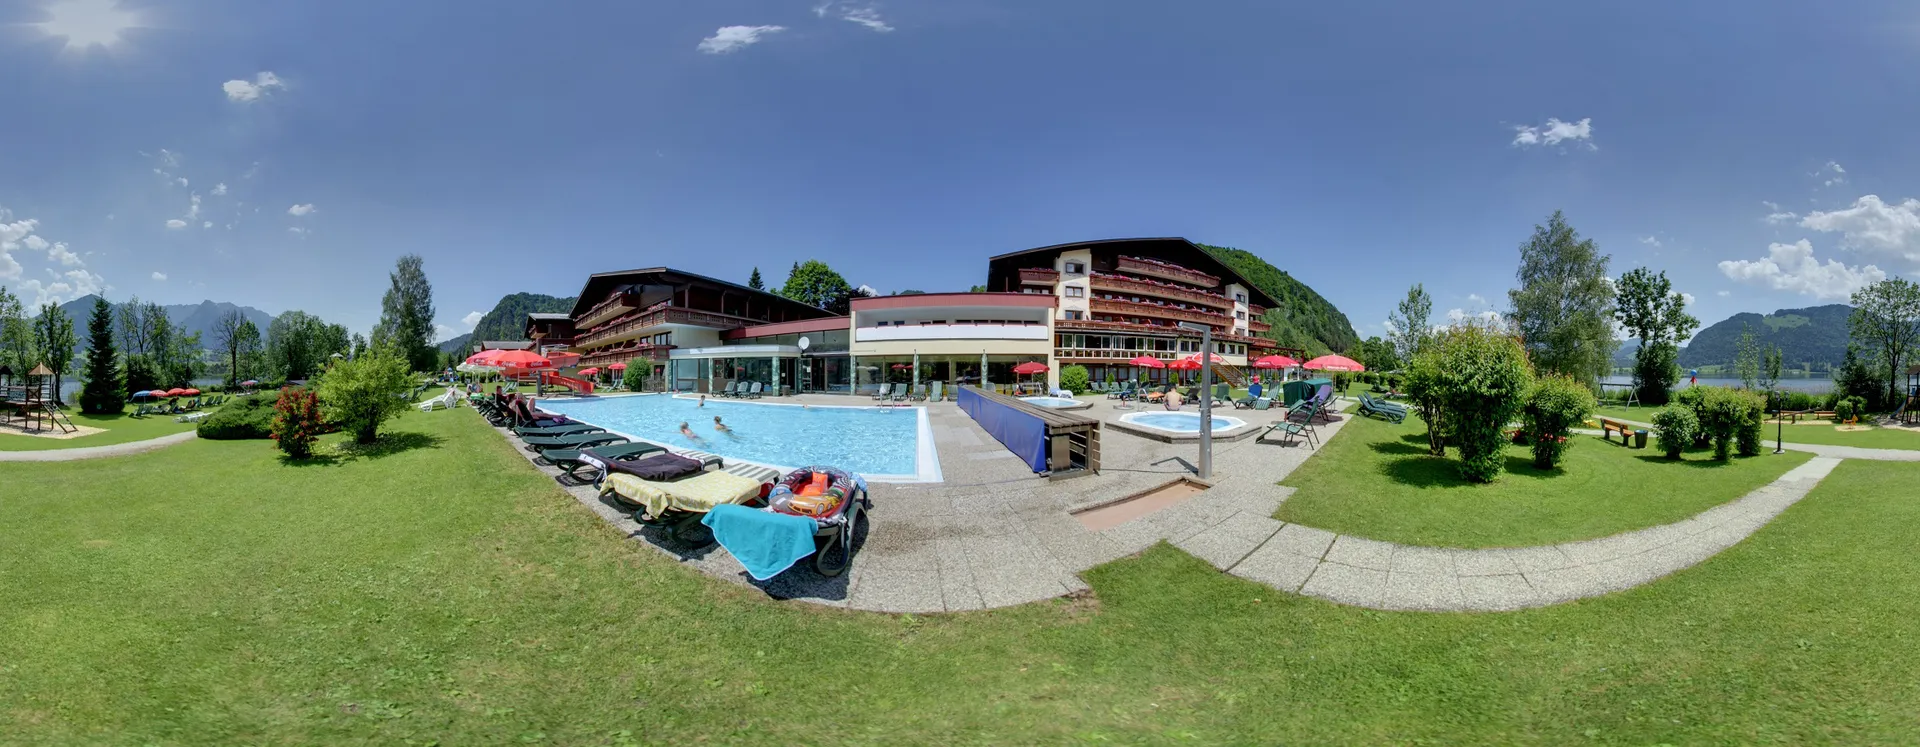 Hotel Ferienclub Bellevue am Walchsee